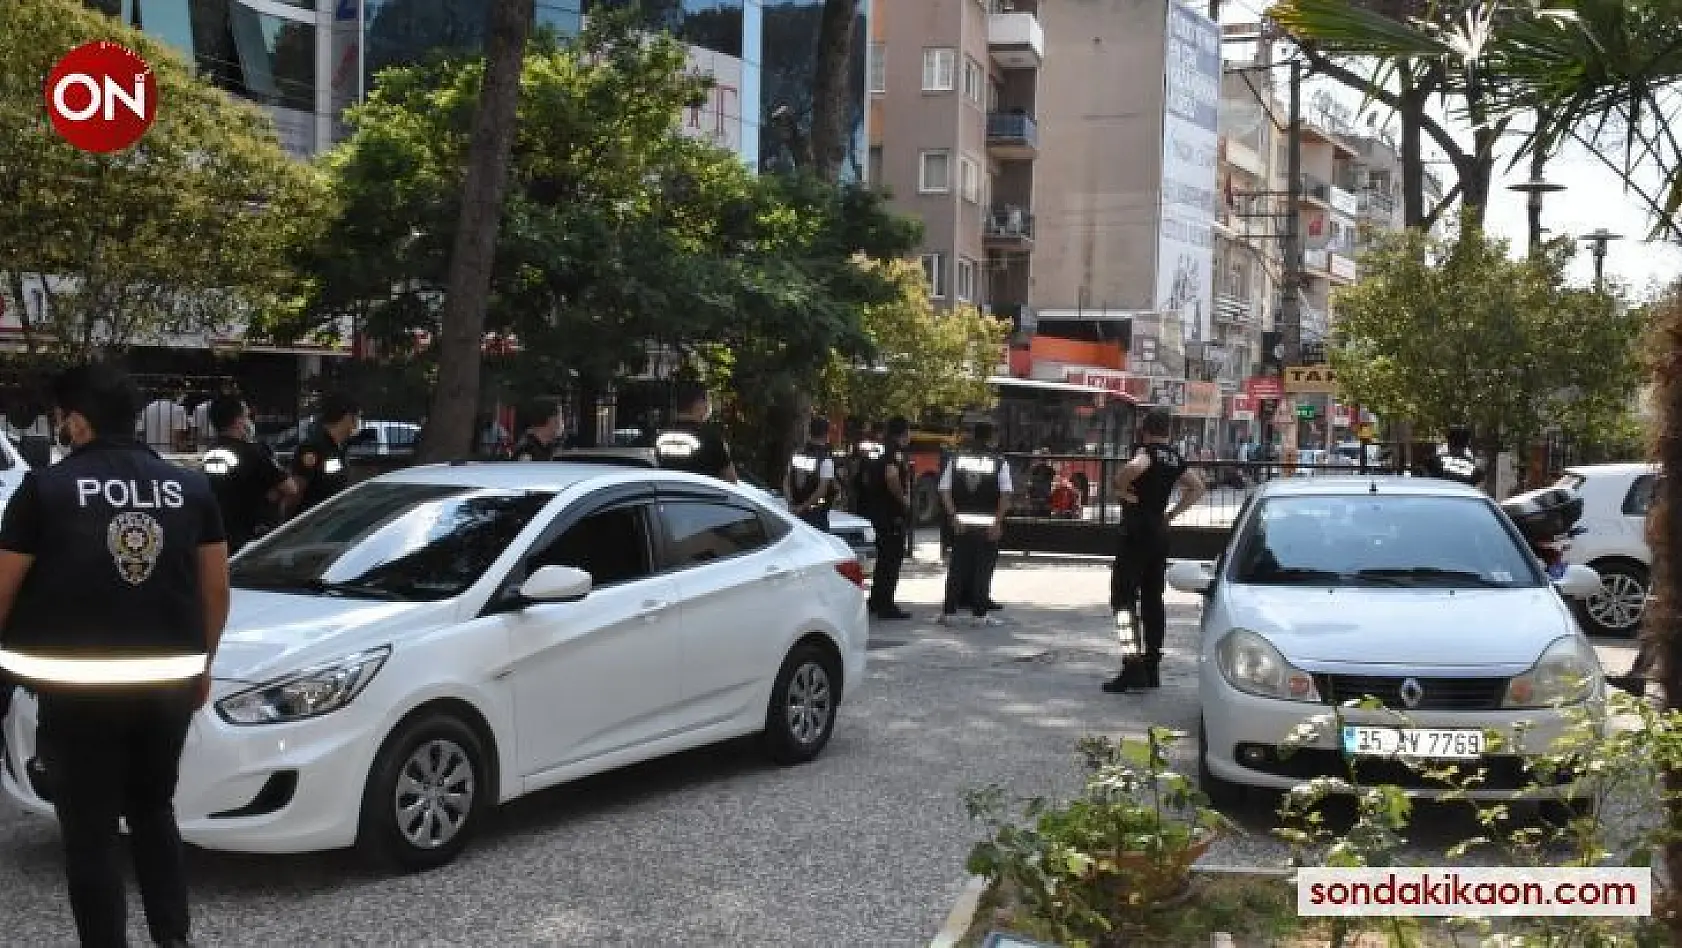 İzmir'de 2 kişinin öldüğü silahlı kavga ile ilgili 2 tutuklama